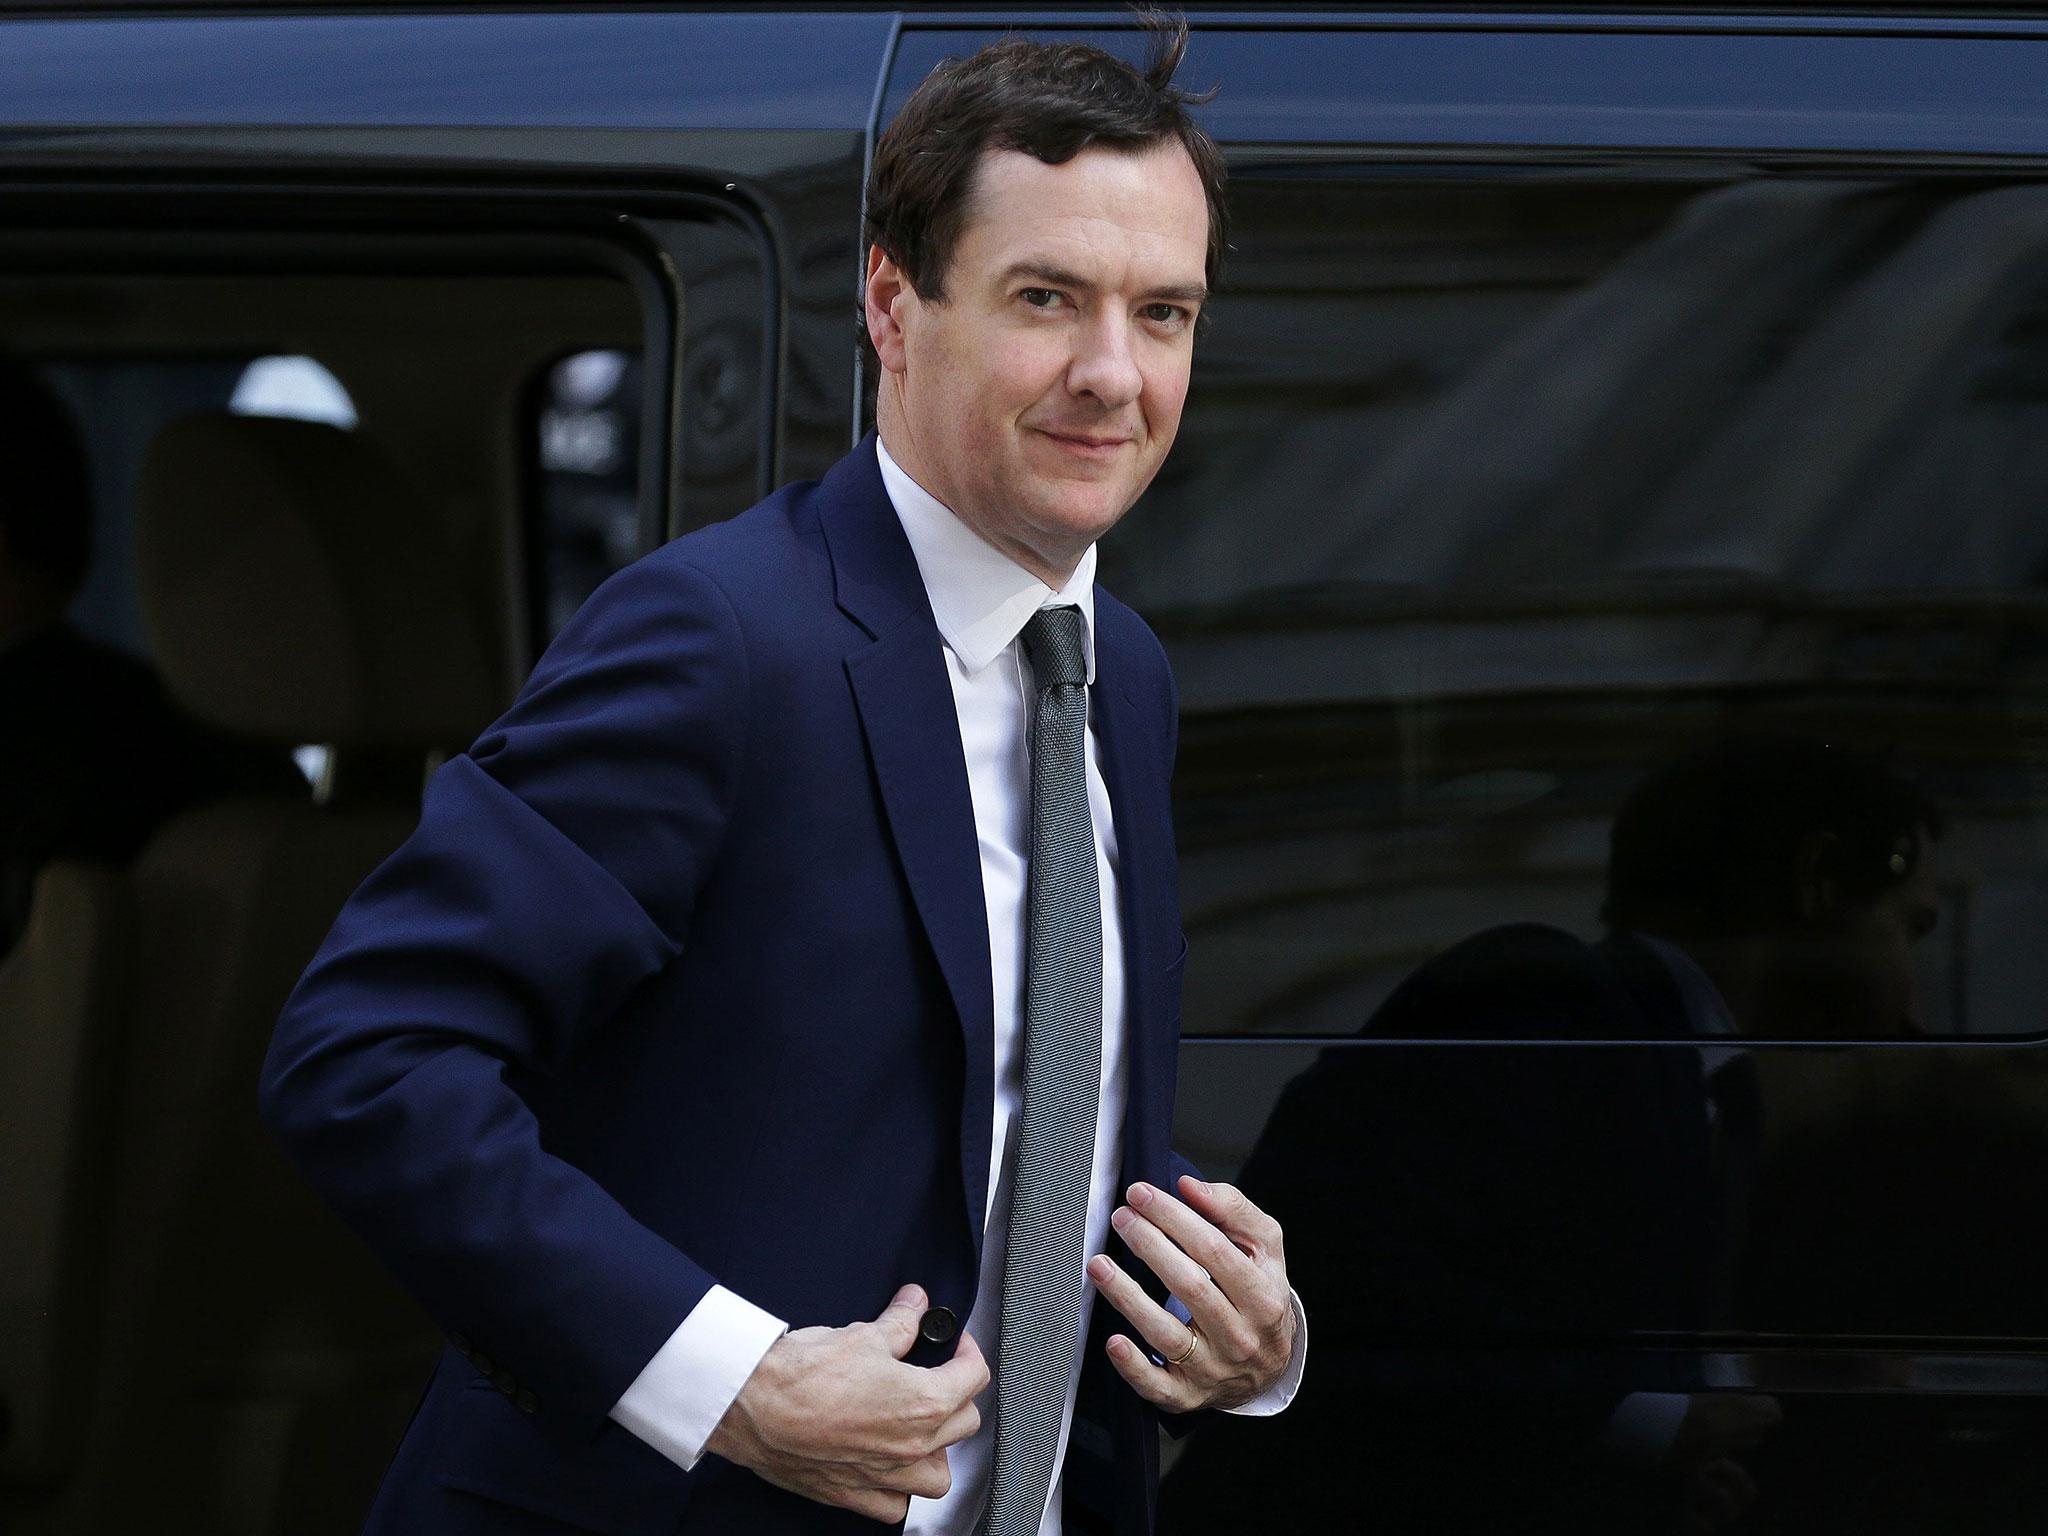 George Osborne is not seeking re-election as an MP on 8 June